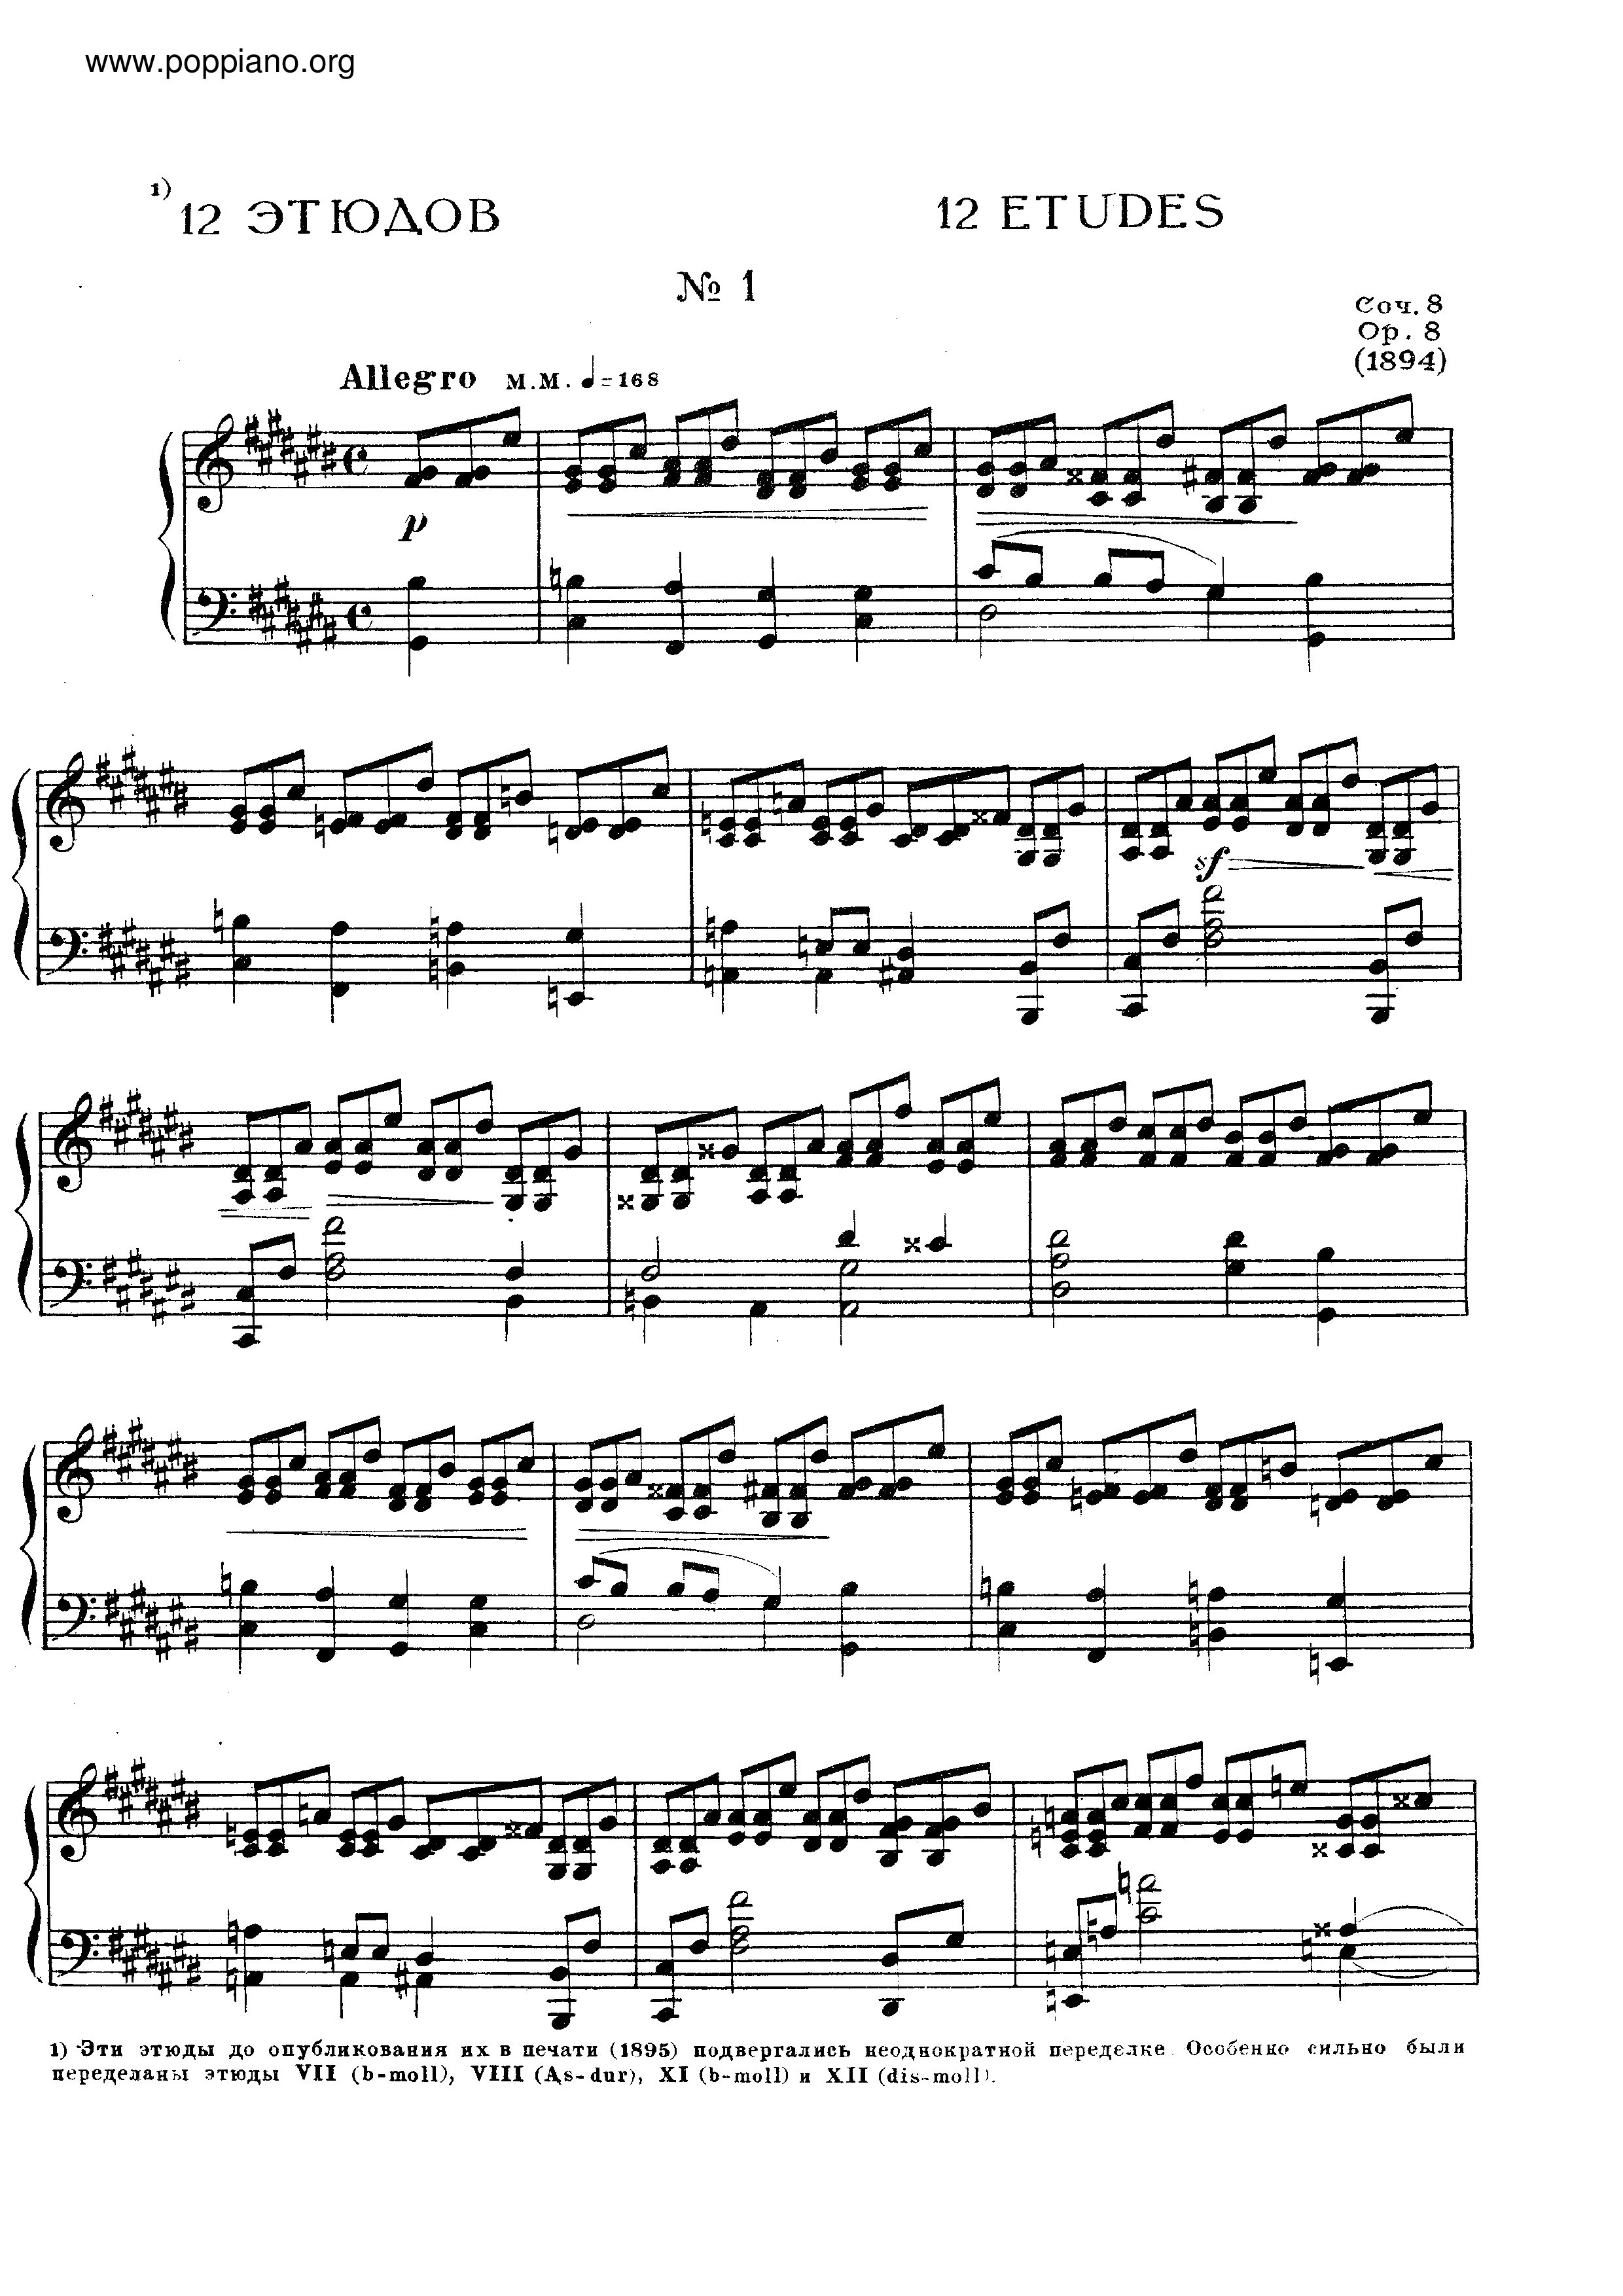 No.1 Etude in C sharp minor, Op.8琴谱